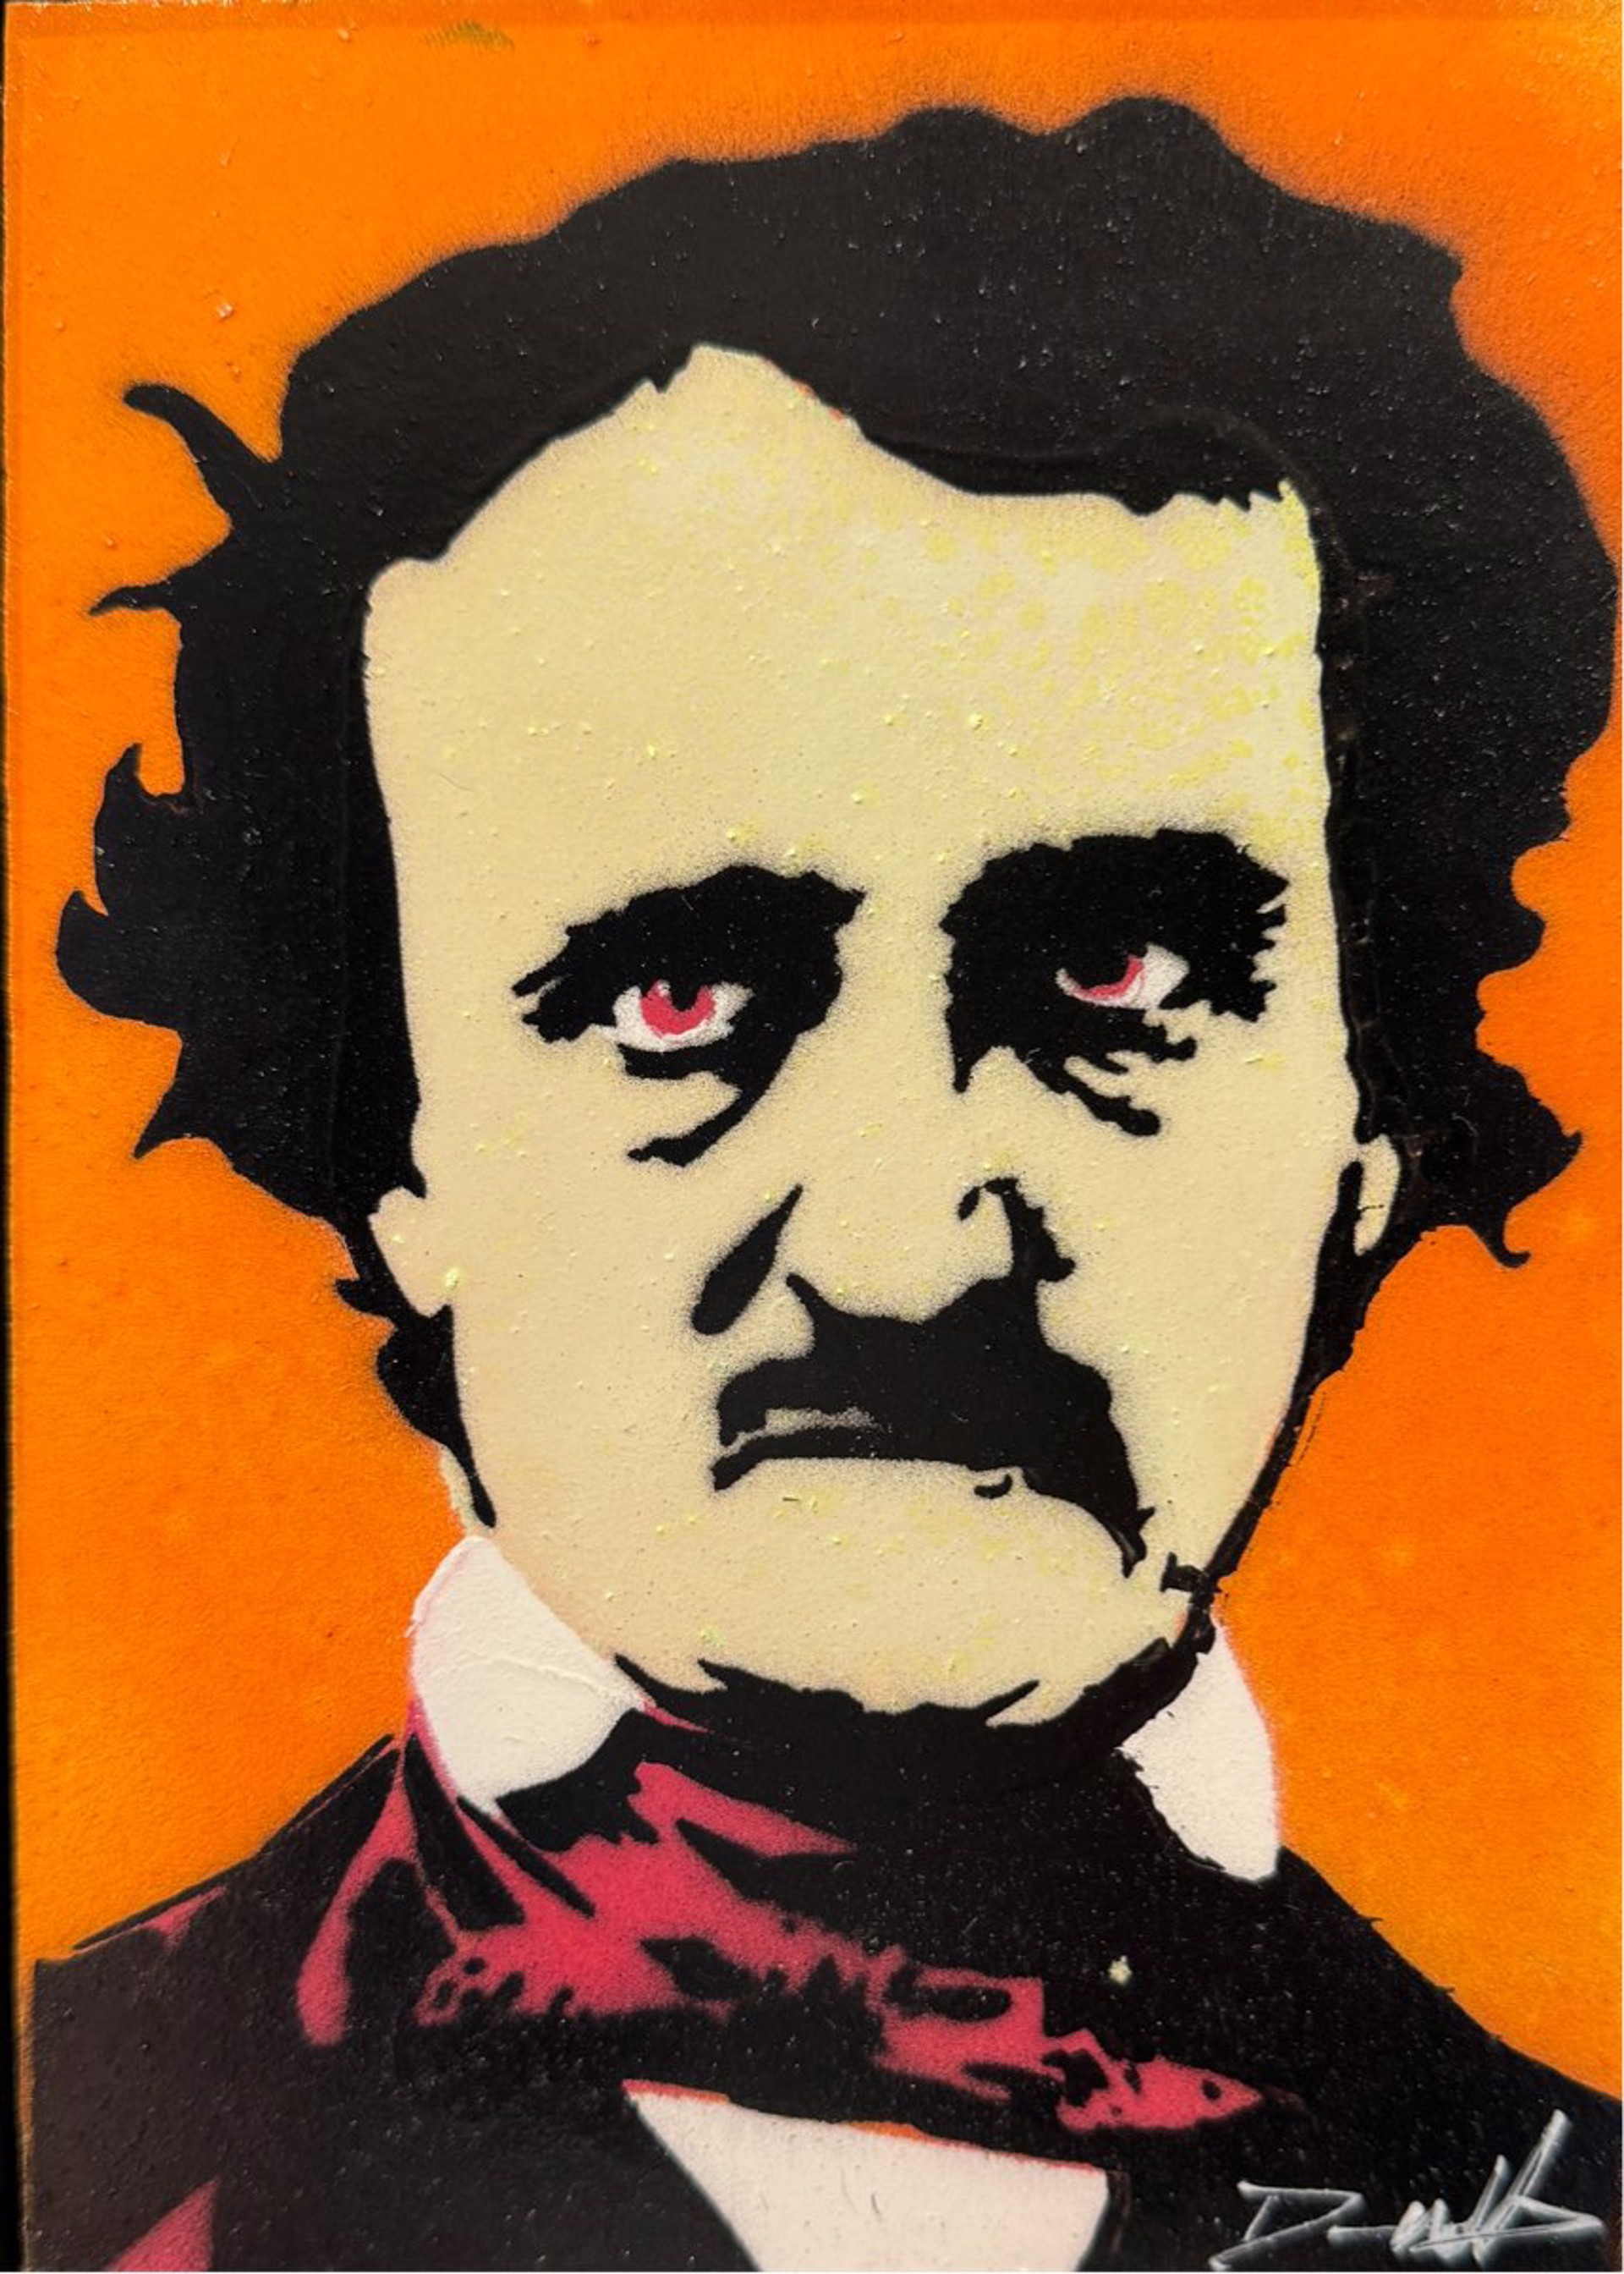 Warhol Poe, Cream on Orange by Dennis Wells